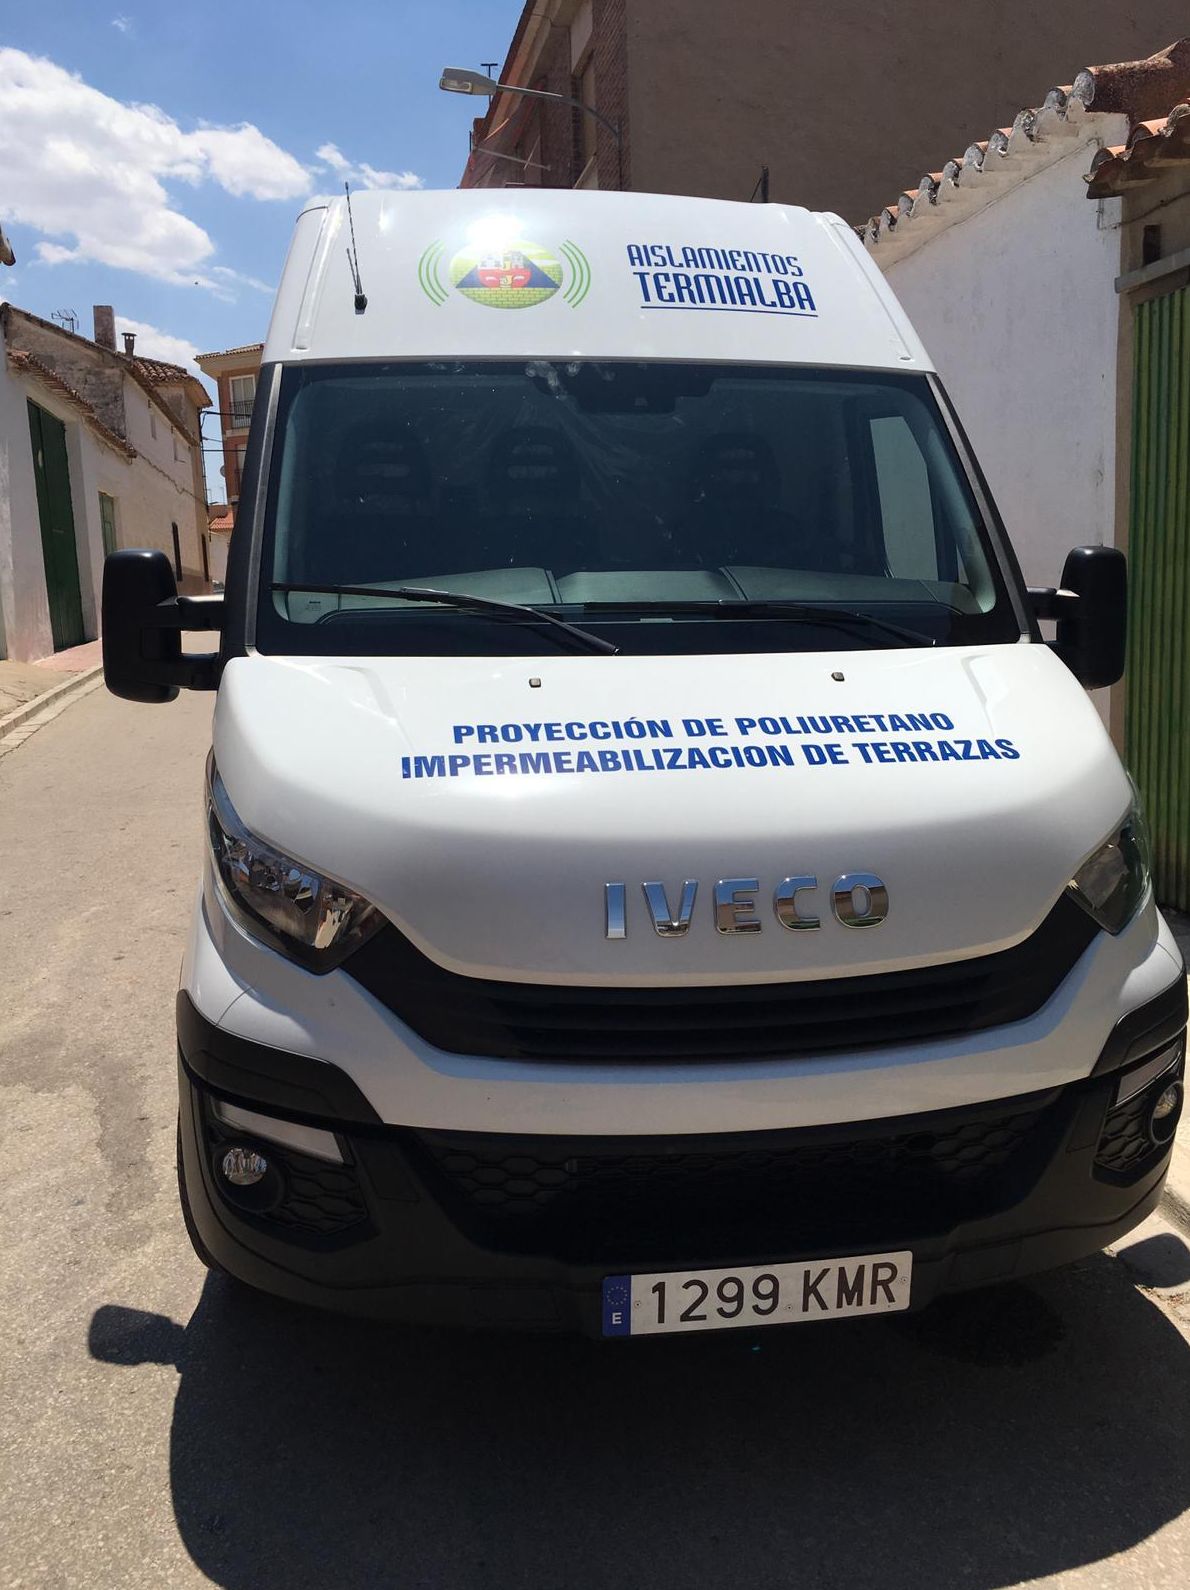 Aislamiento de poliuretano en Albacete